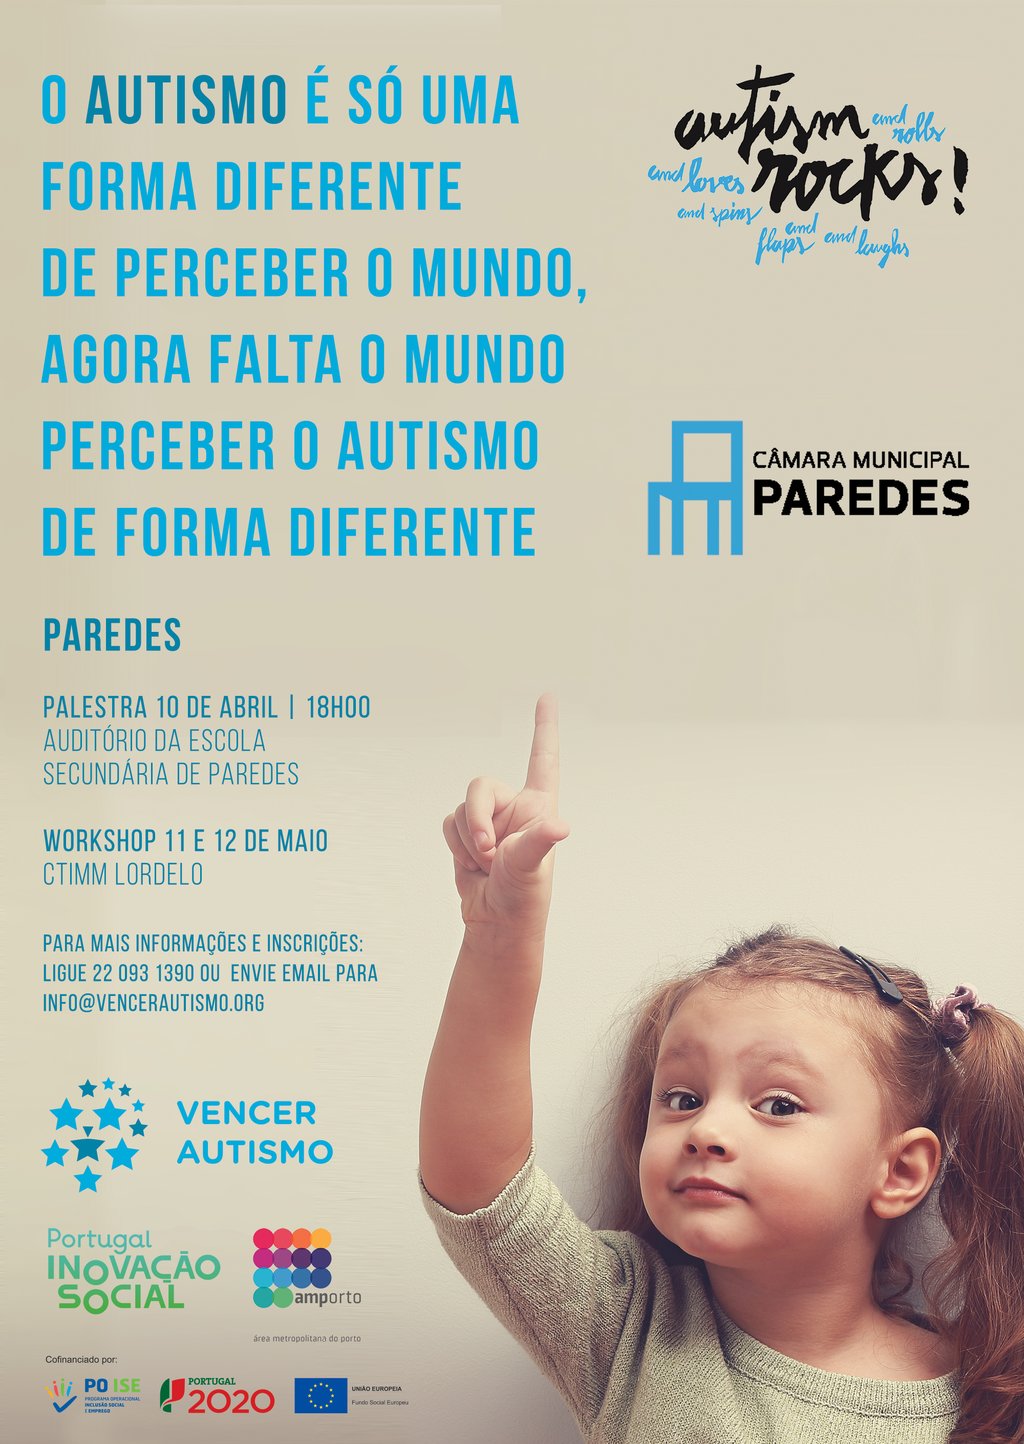 Município de Paredes apoia diversas iniciativas para a "Consciencialização do Autismo"